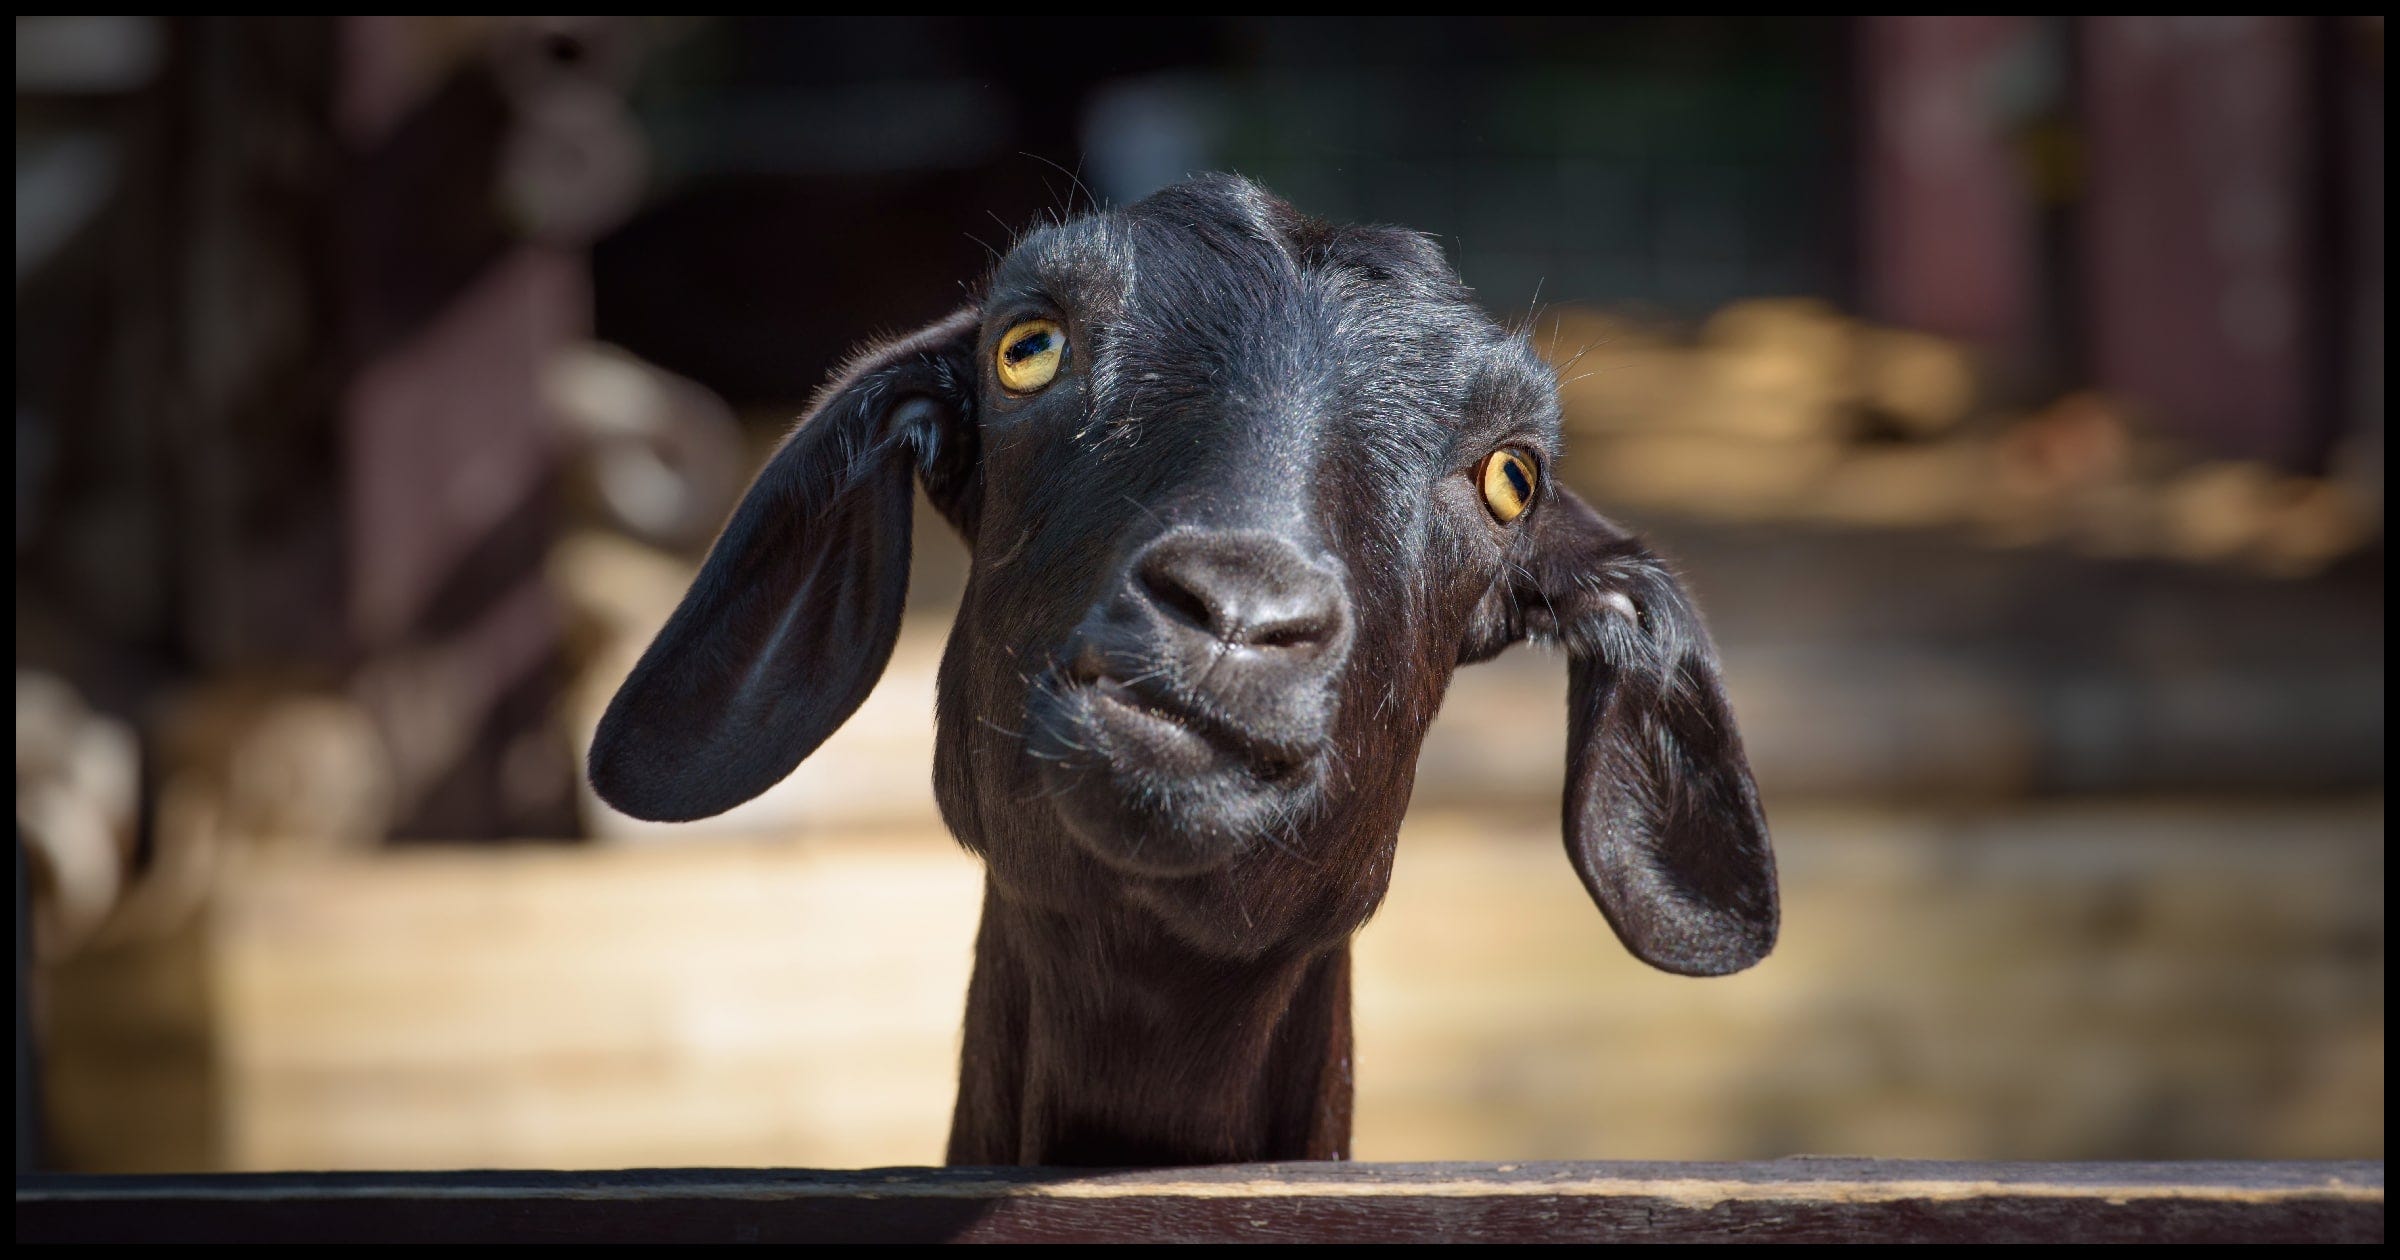 A goat looking weird.